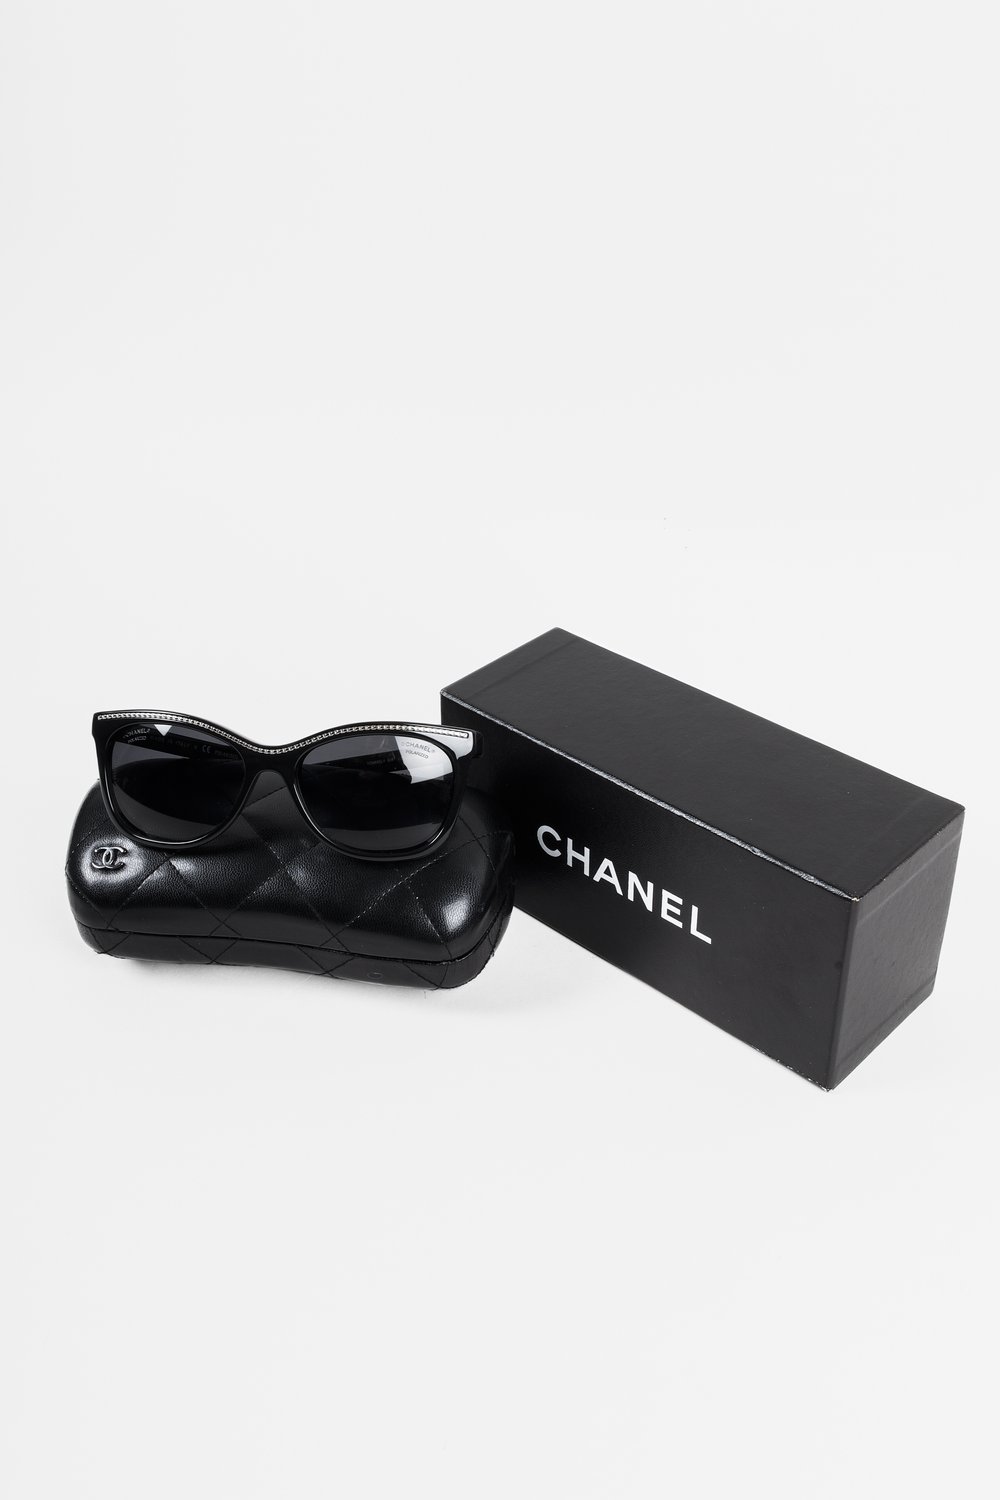 Chanel Black Classic Sunglasses — BLOGGER ARMOIRE